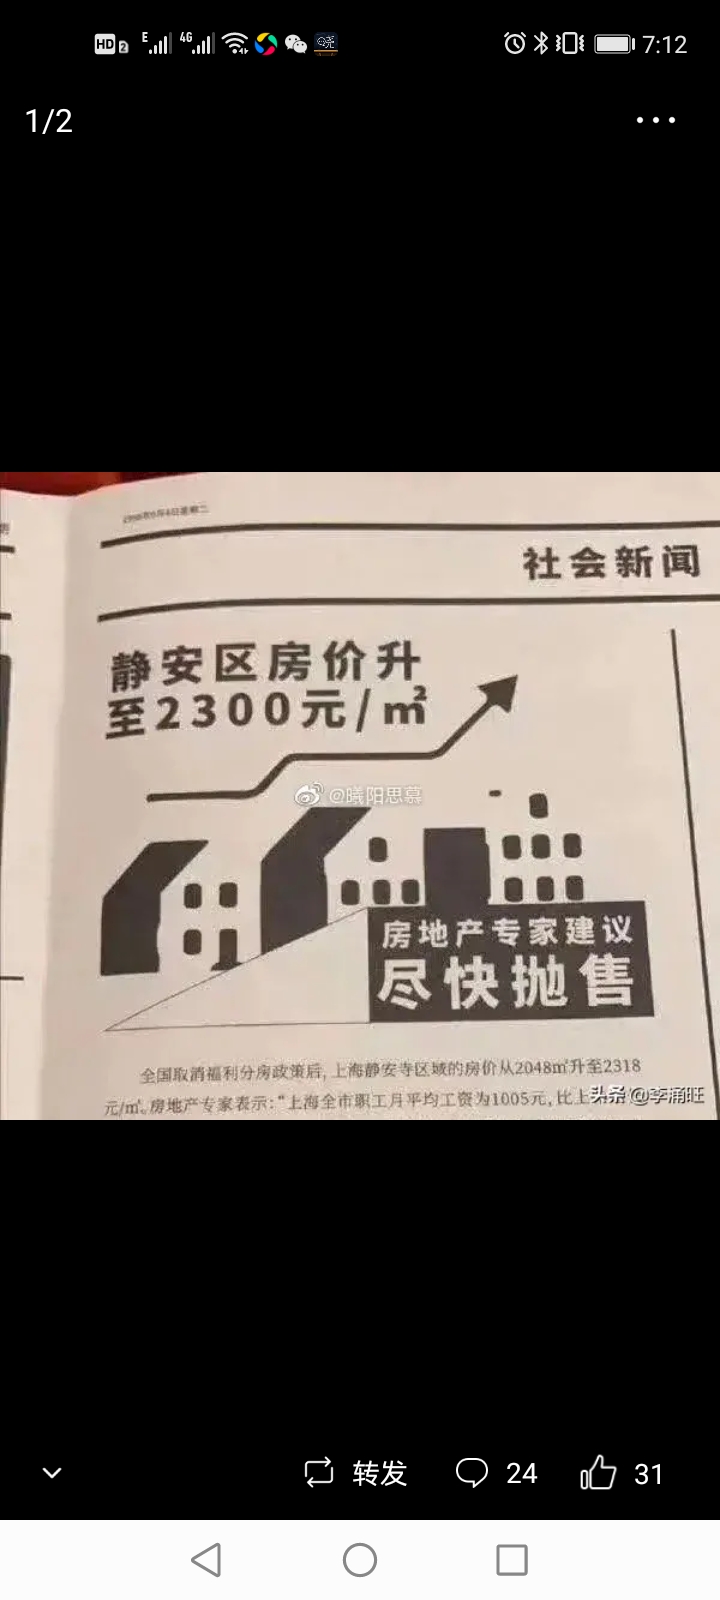 997年上海静安区房价每米高达2300元专家建议房价过高尽快抛售买不如